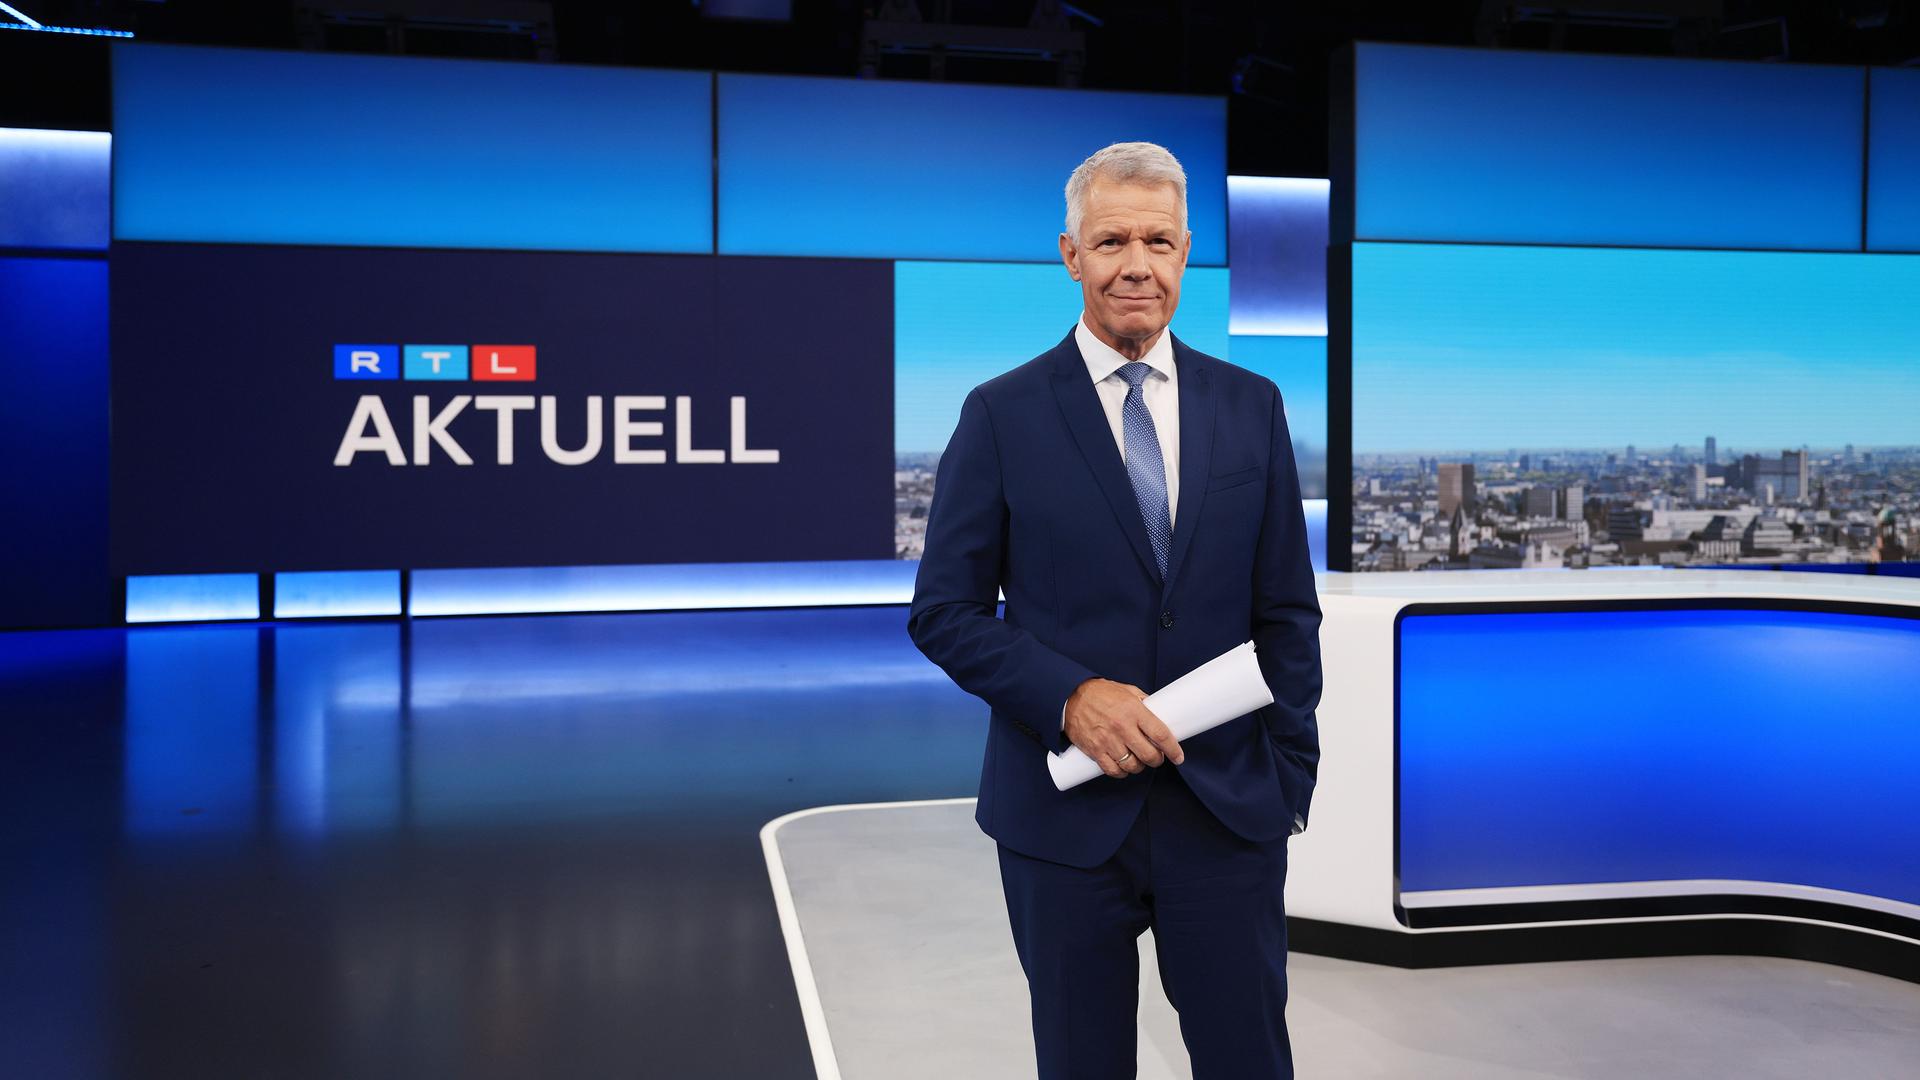 Nachrichtenmoderator Peter Kloeppel steht in einem Fernsehstudio, im Hintergrund steht "RTL Aktuell" an der Wand.